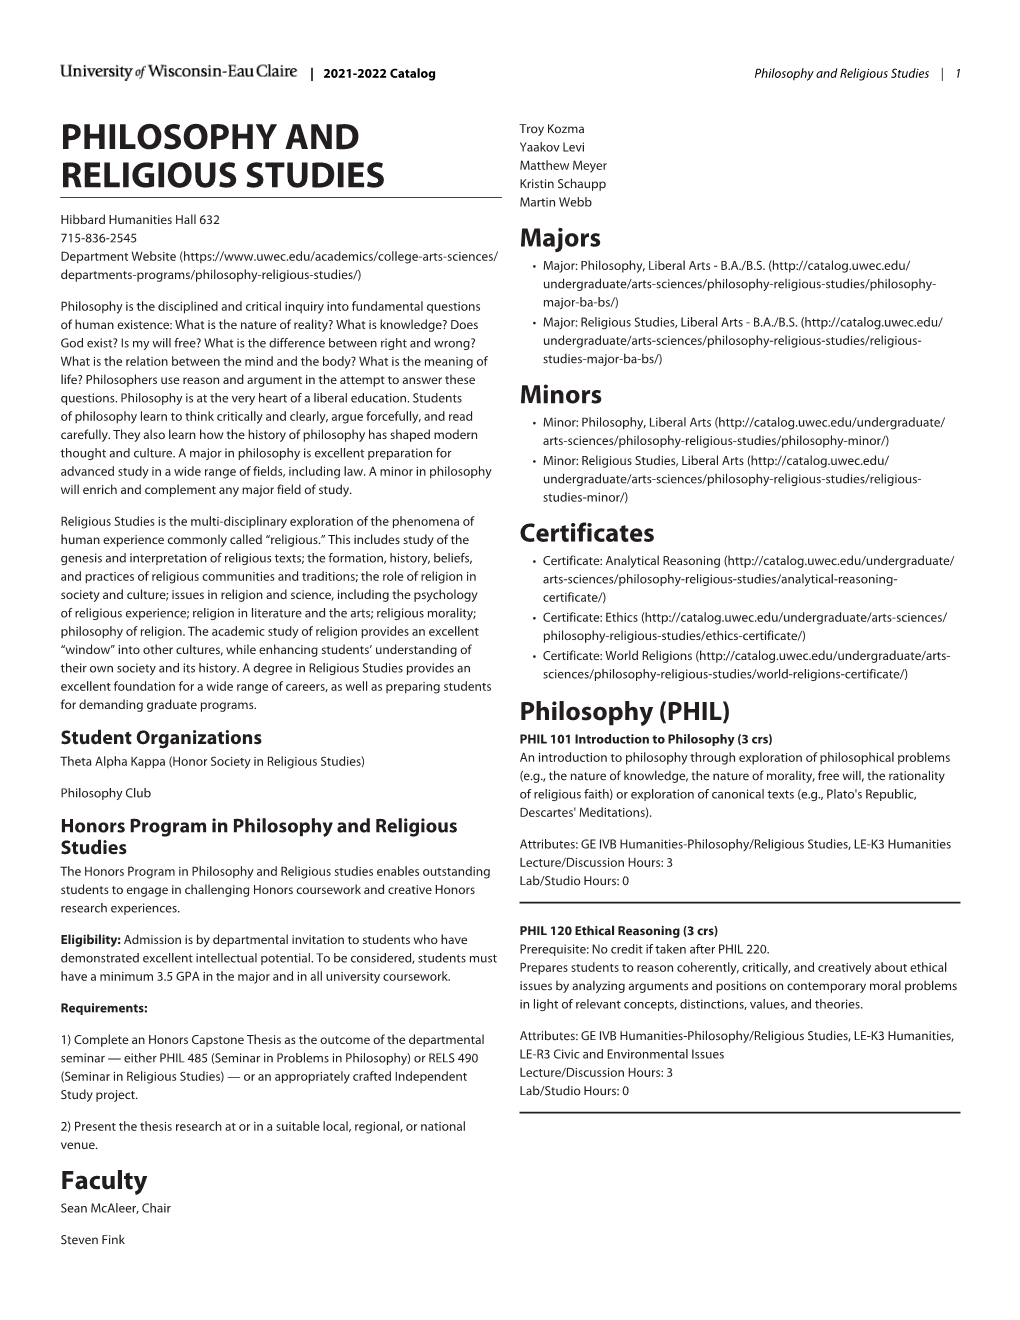 Philosophy and Religious Studies | 1